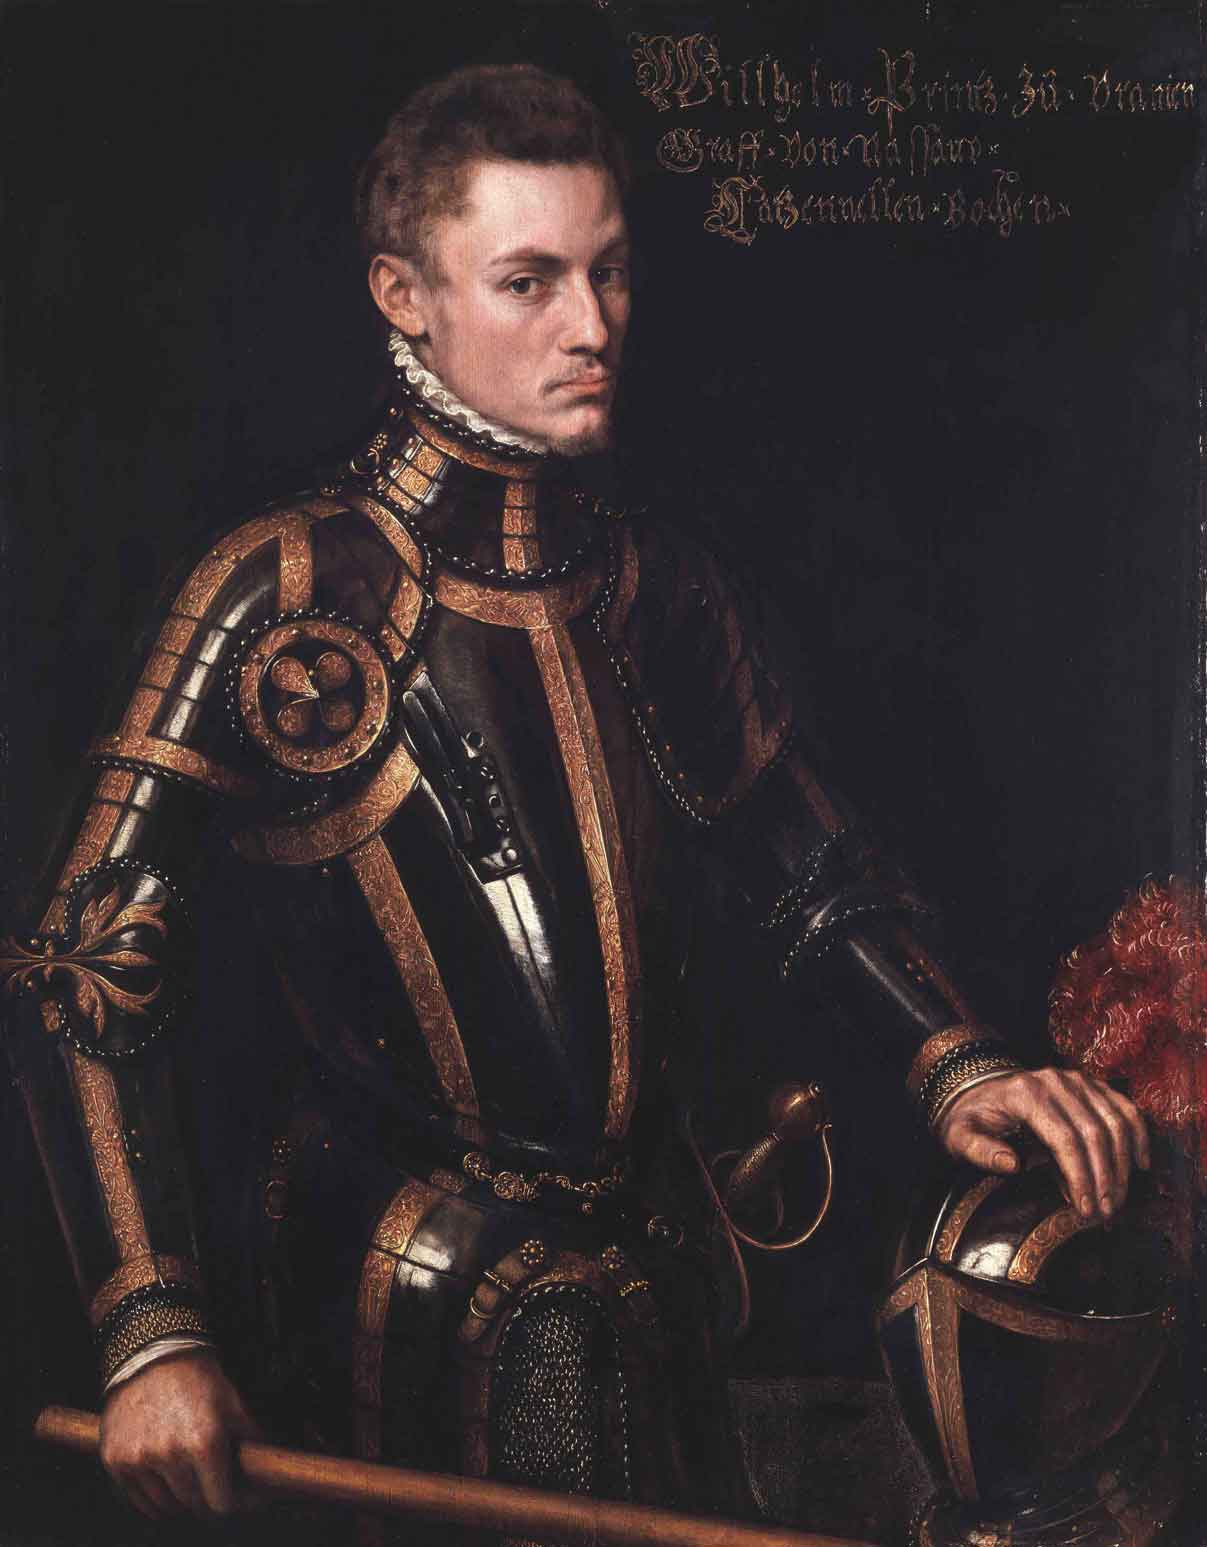 Portrait of Willem I of Nassau, prince of Orange and Stadhouder